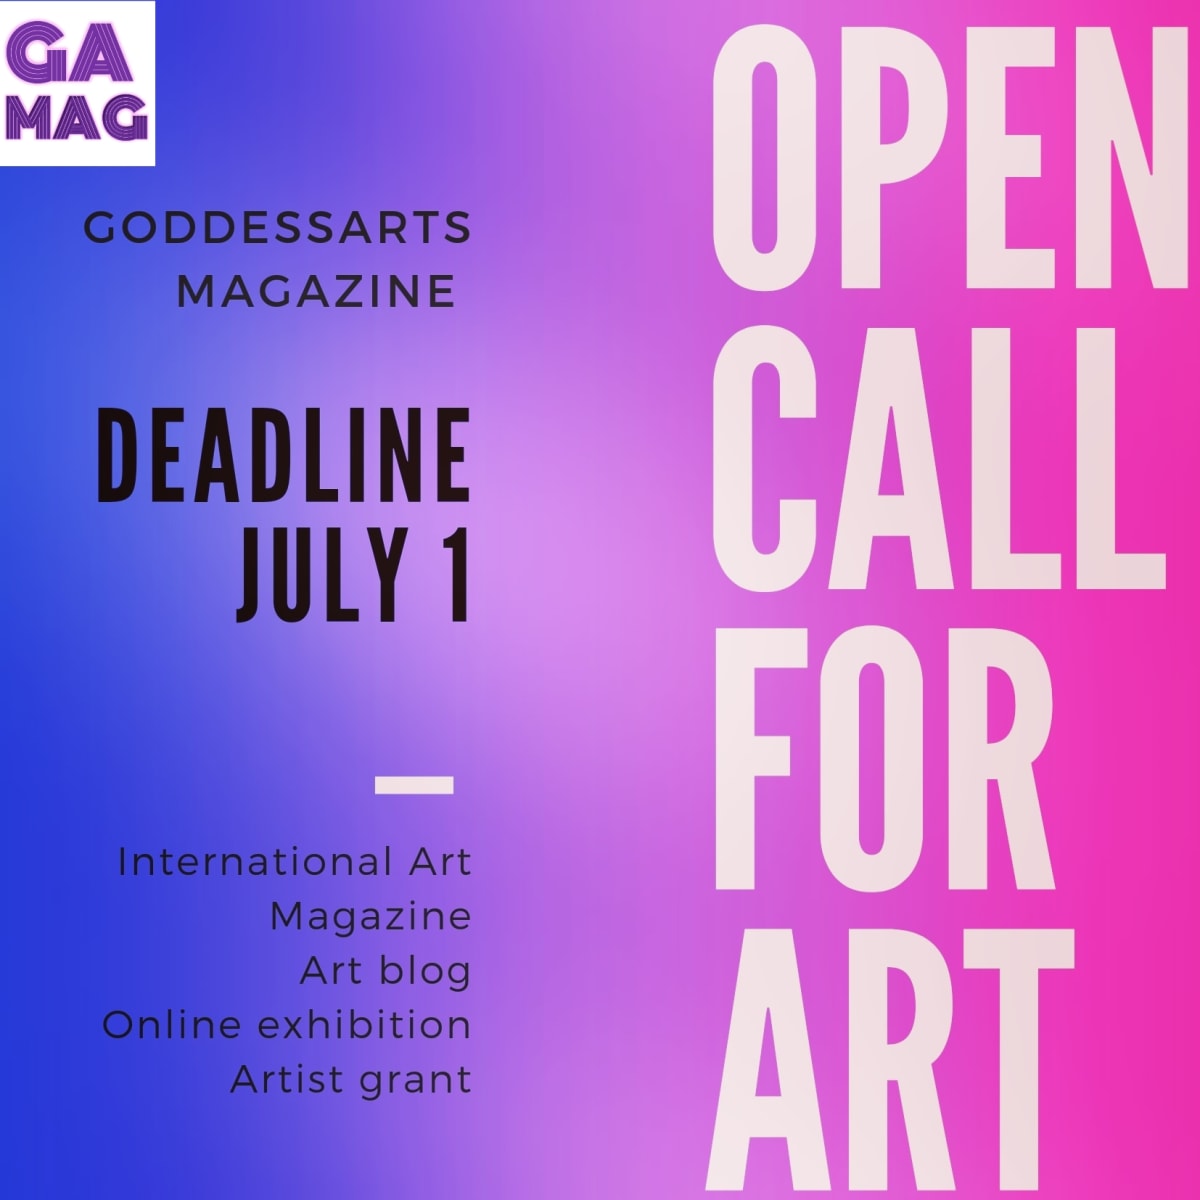 Goddessarts Magazine issue 10, art blog and online exhibition